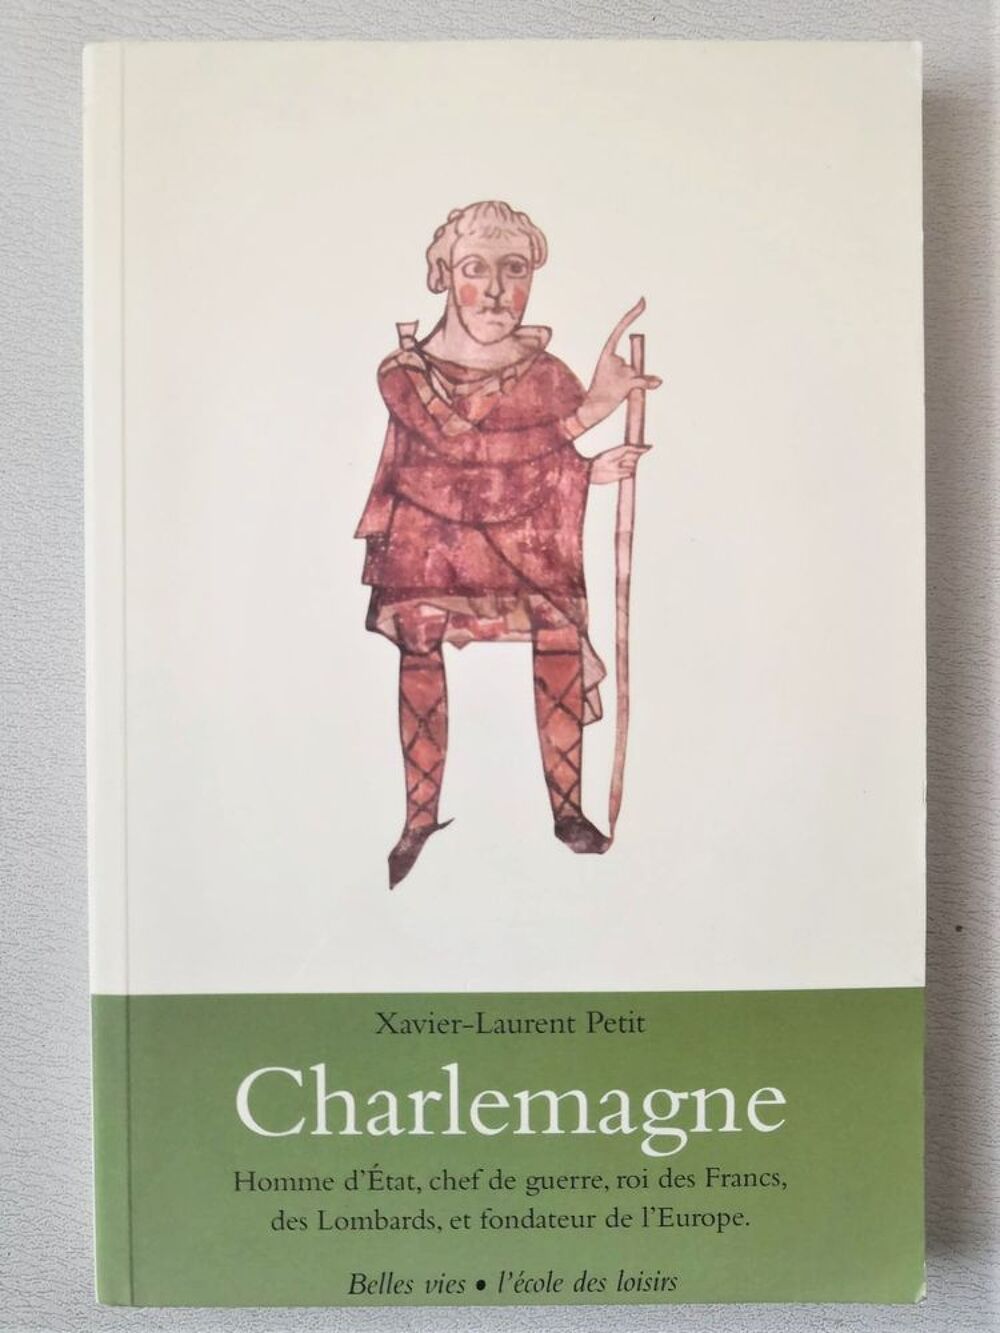 Charlemagne - Xavier-Laurent Petit - l'&eacute;cole des loisirs Livres et BD